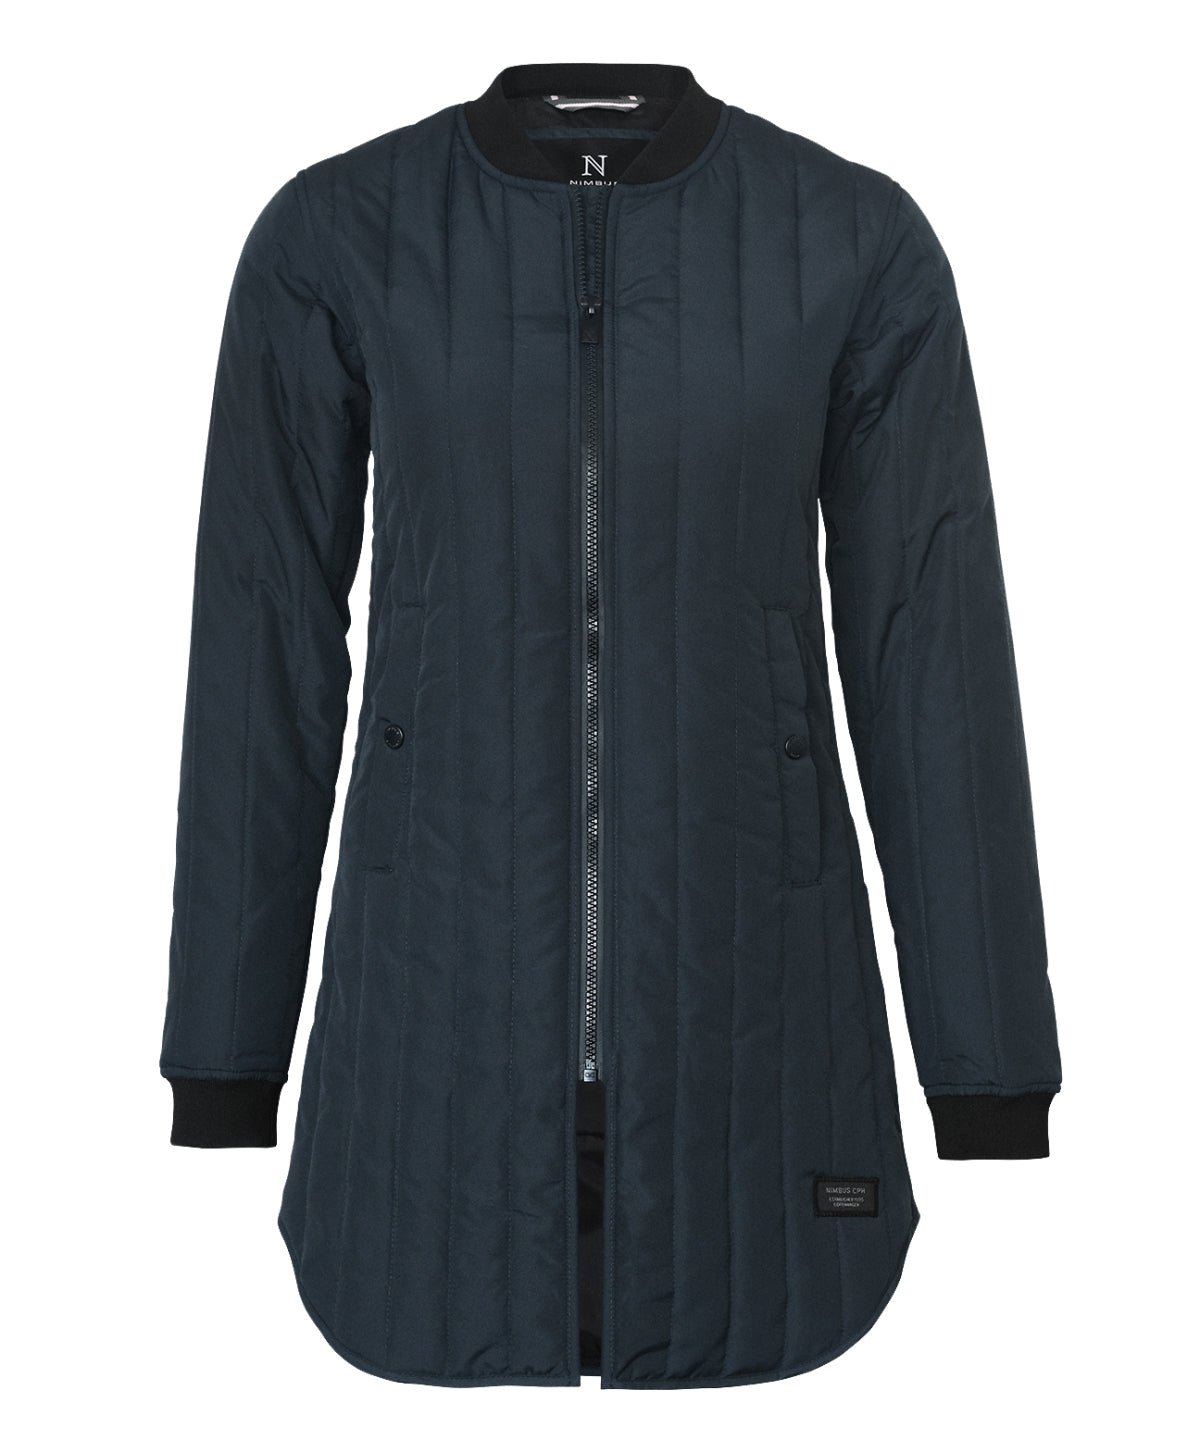 Nimbus Women’s Lindenwood – urban style quilted jacket